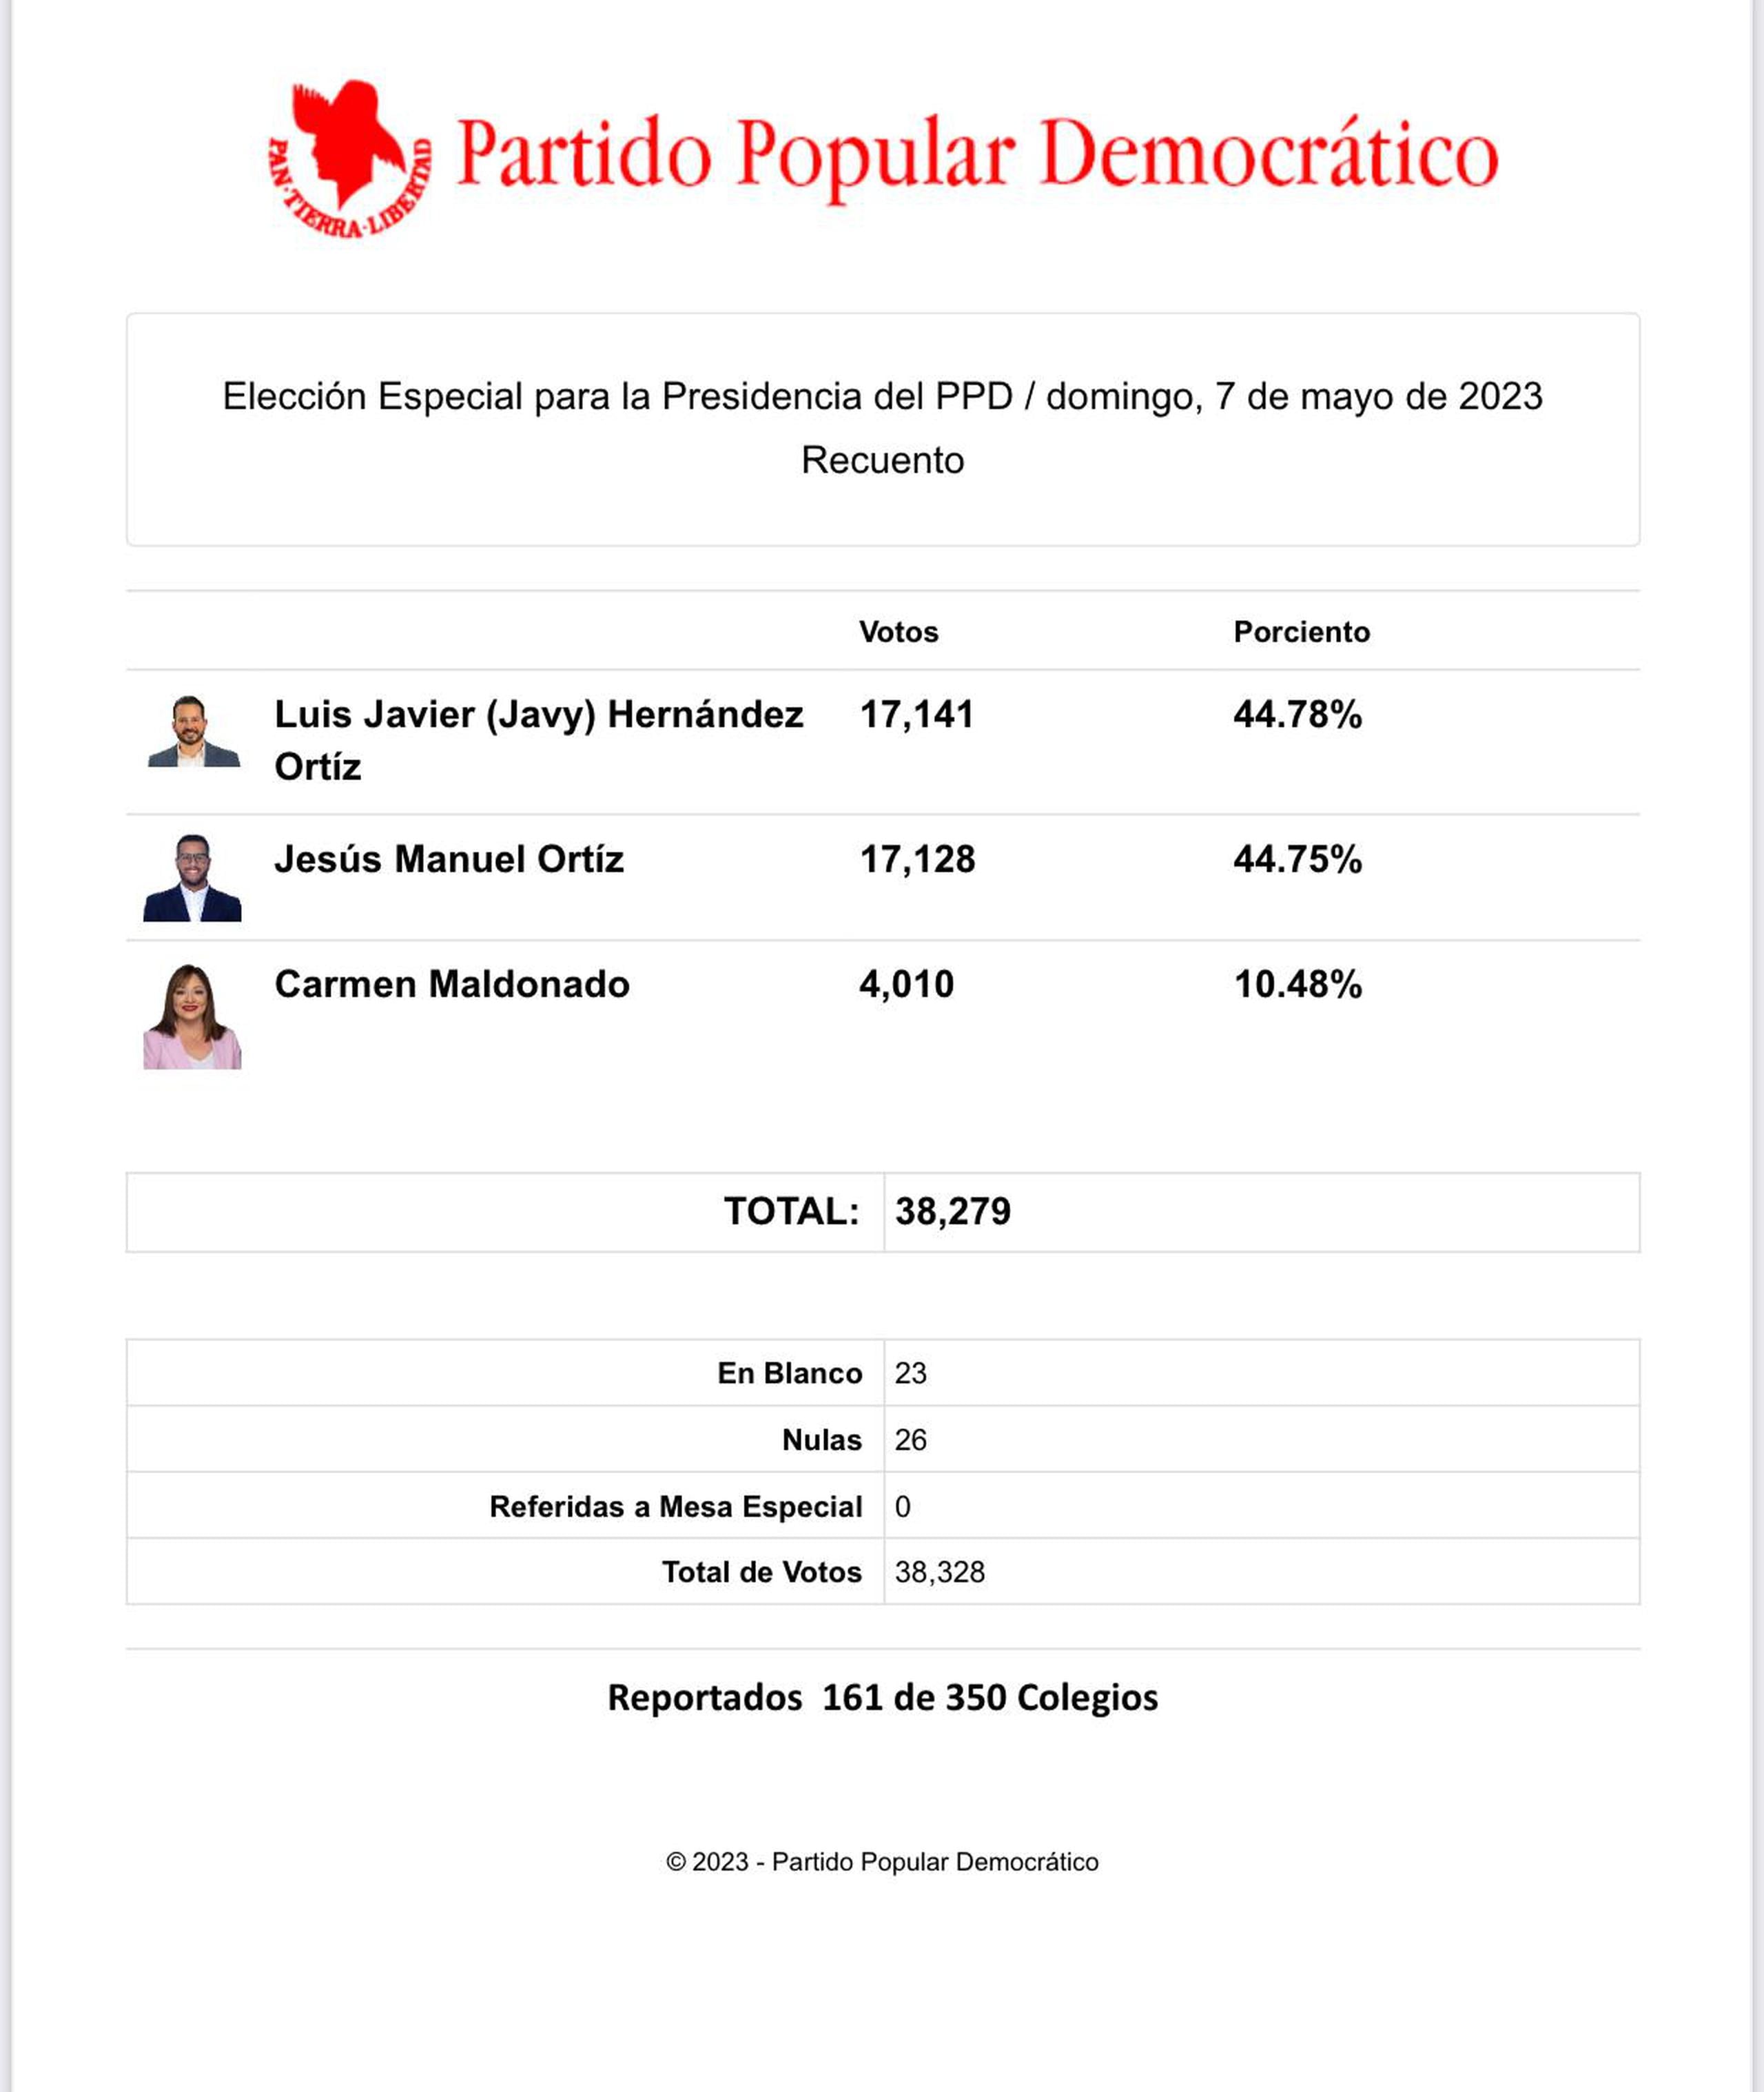 Resultados preliminares de la elección especial para la presidencia del Partido Popular Democrático, donde el alcalde de Villalba Luis Javier Hernández se encuentra al frente del representante Jesús Manuel Ortiz por solo 13 votos.